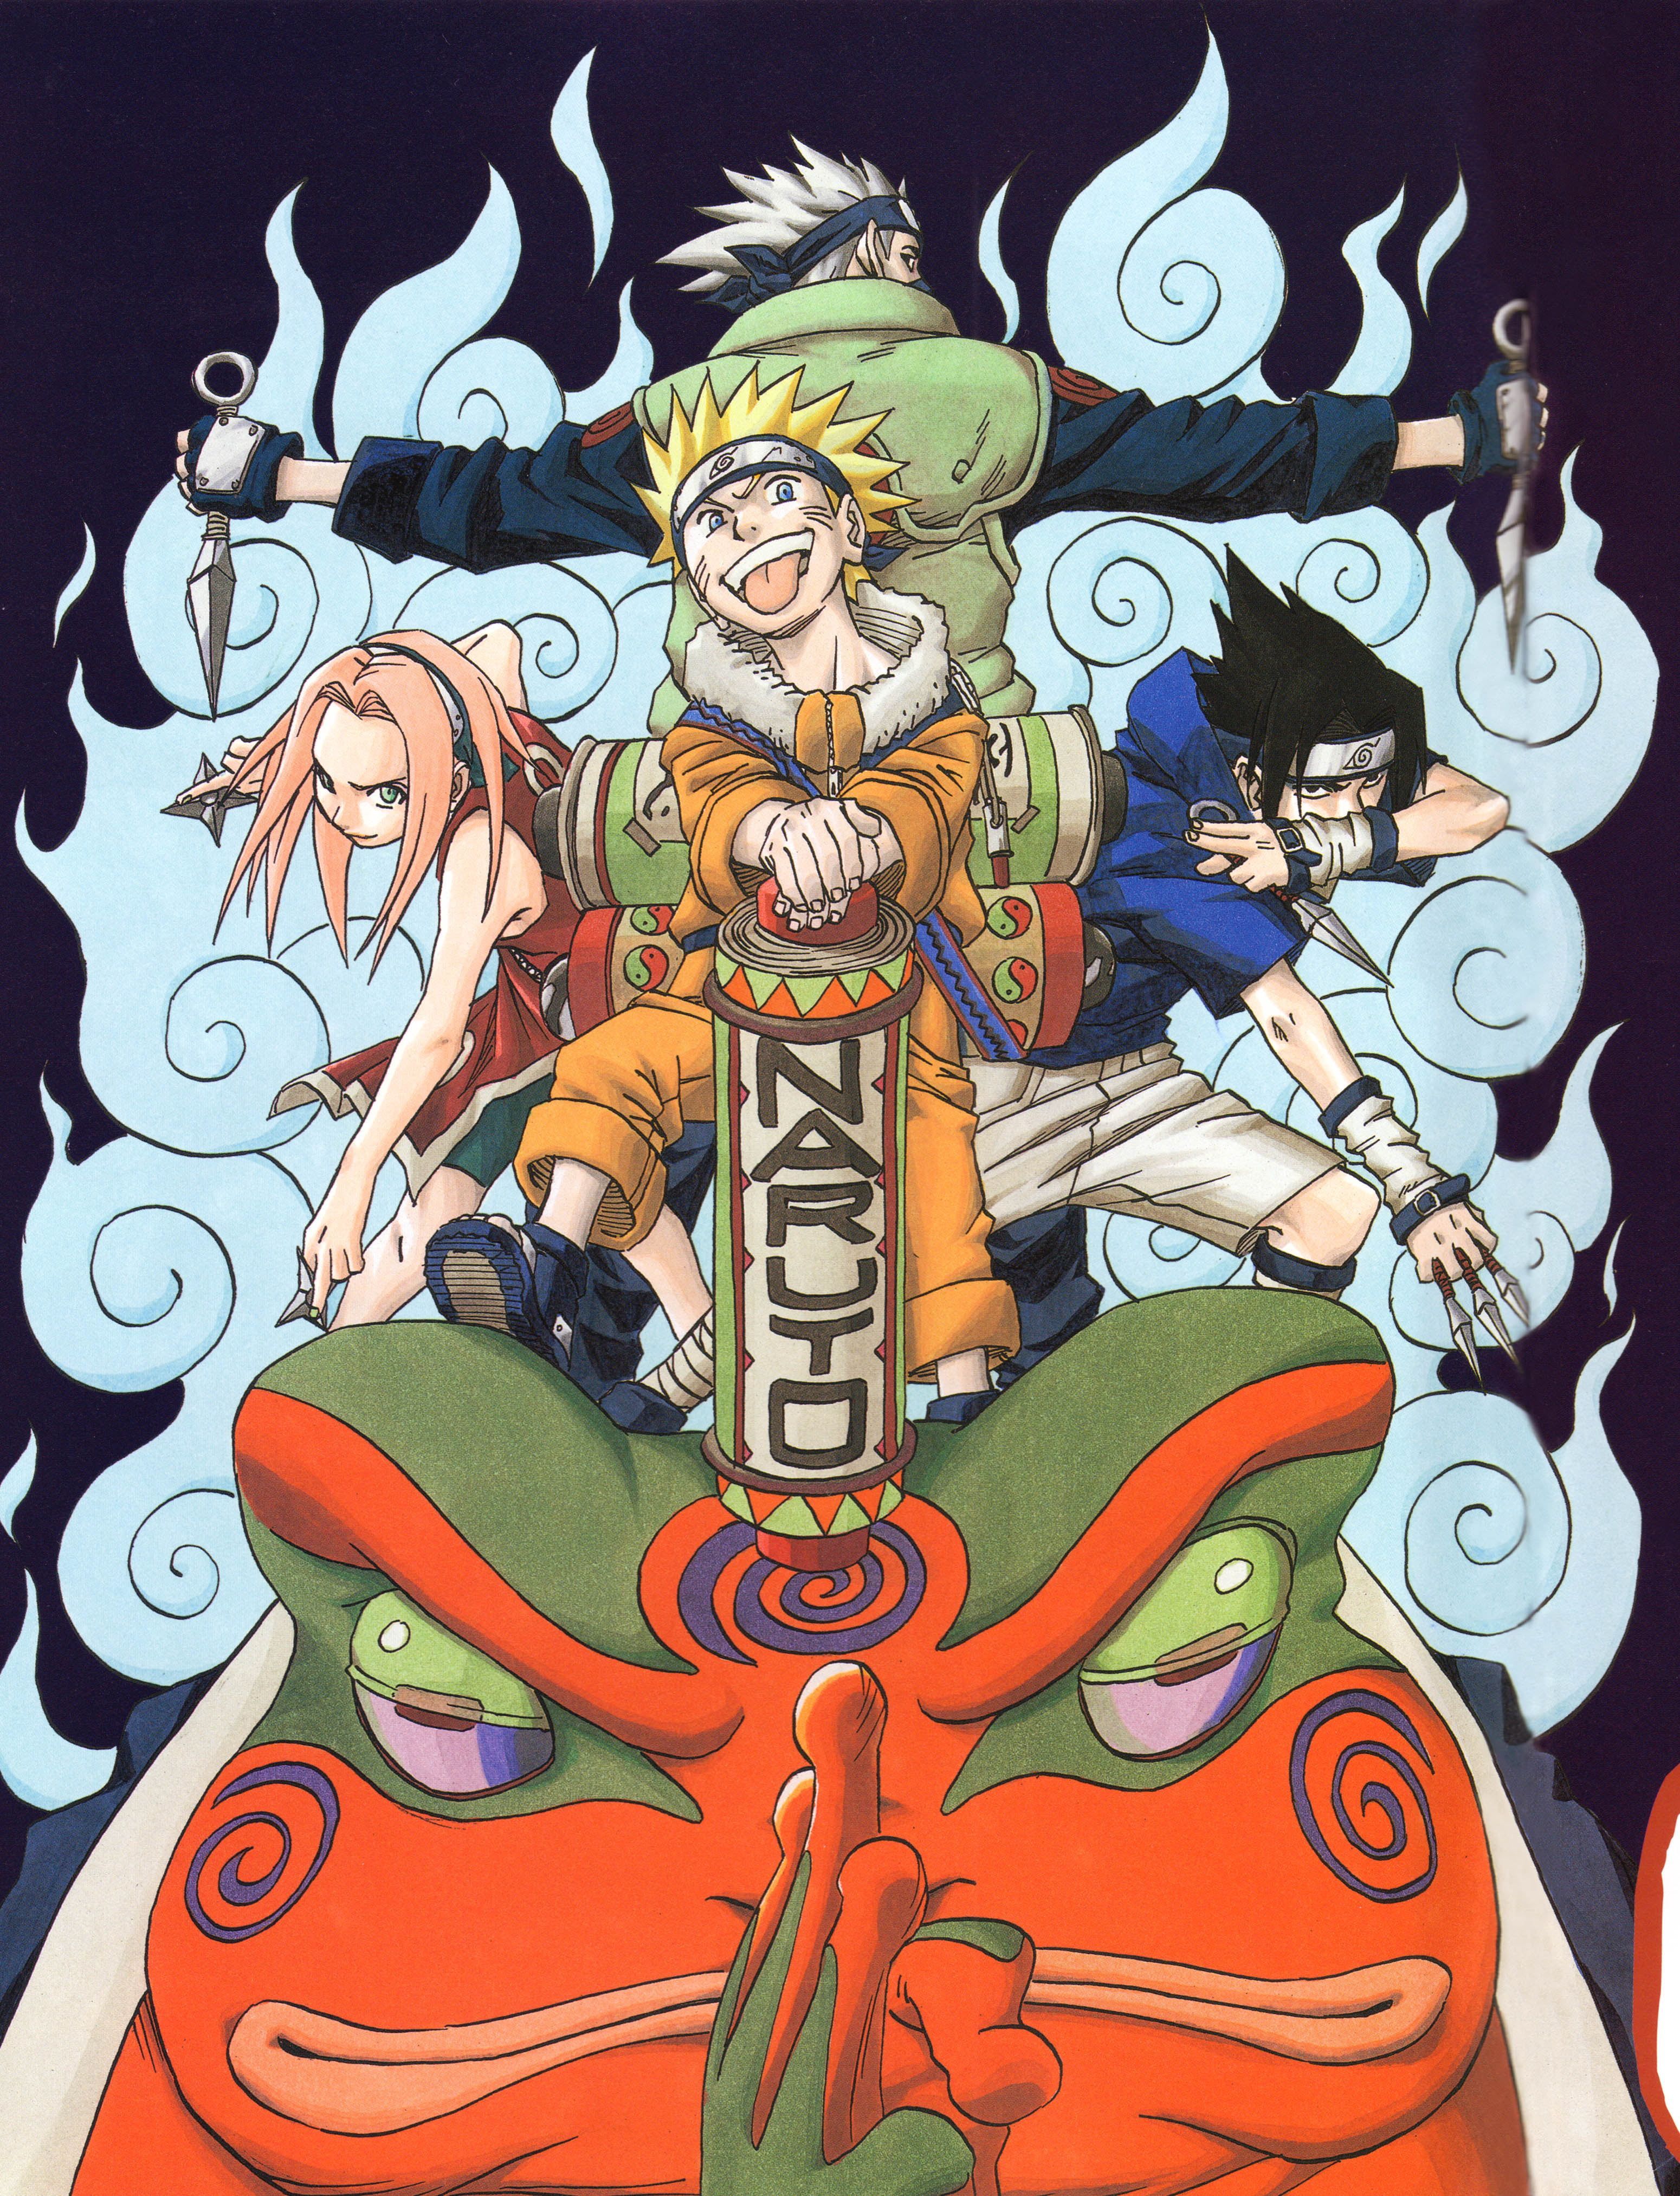 Naruto season 1 wallpaper Naruto Shippuuden Masashi Kishimoto Uzumaki Naruto Haruno Sakura Uchiha Sasuke #artwork #il. Anime, Naruto shippuden anime, Anime naruto